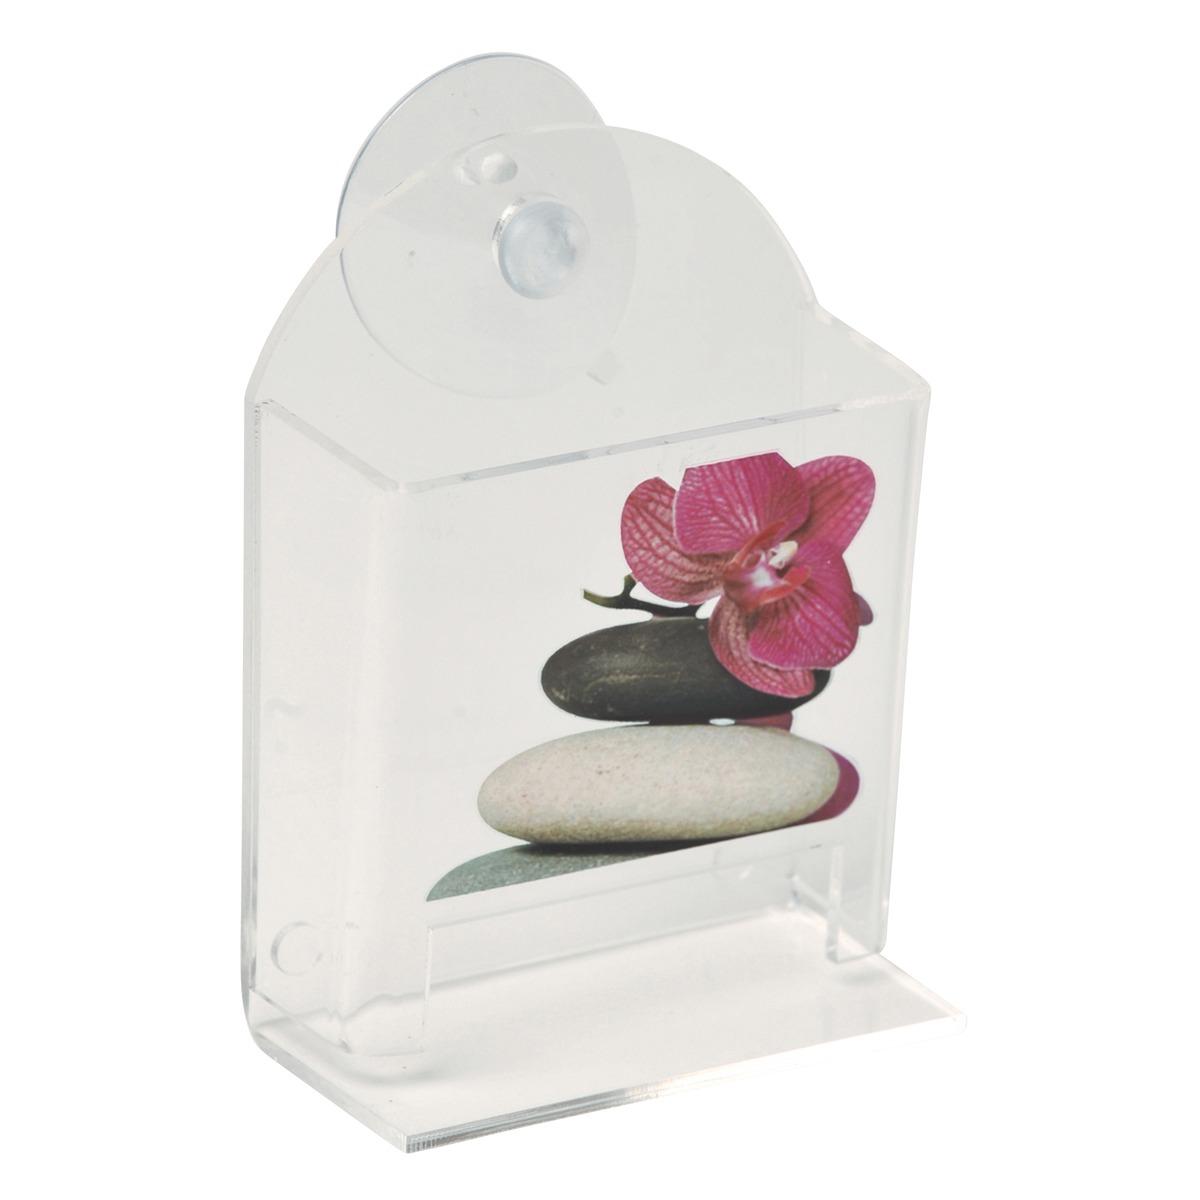 Distributeur de coton-tige collection Spa - 13 x 9,5 x 5 cm - Blanc, gris, rose